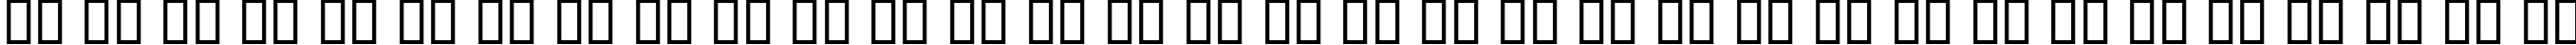 Пример написания русского алфавита шрифтом KacstTitleL